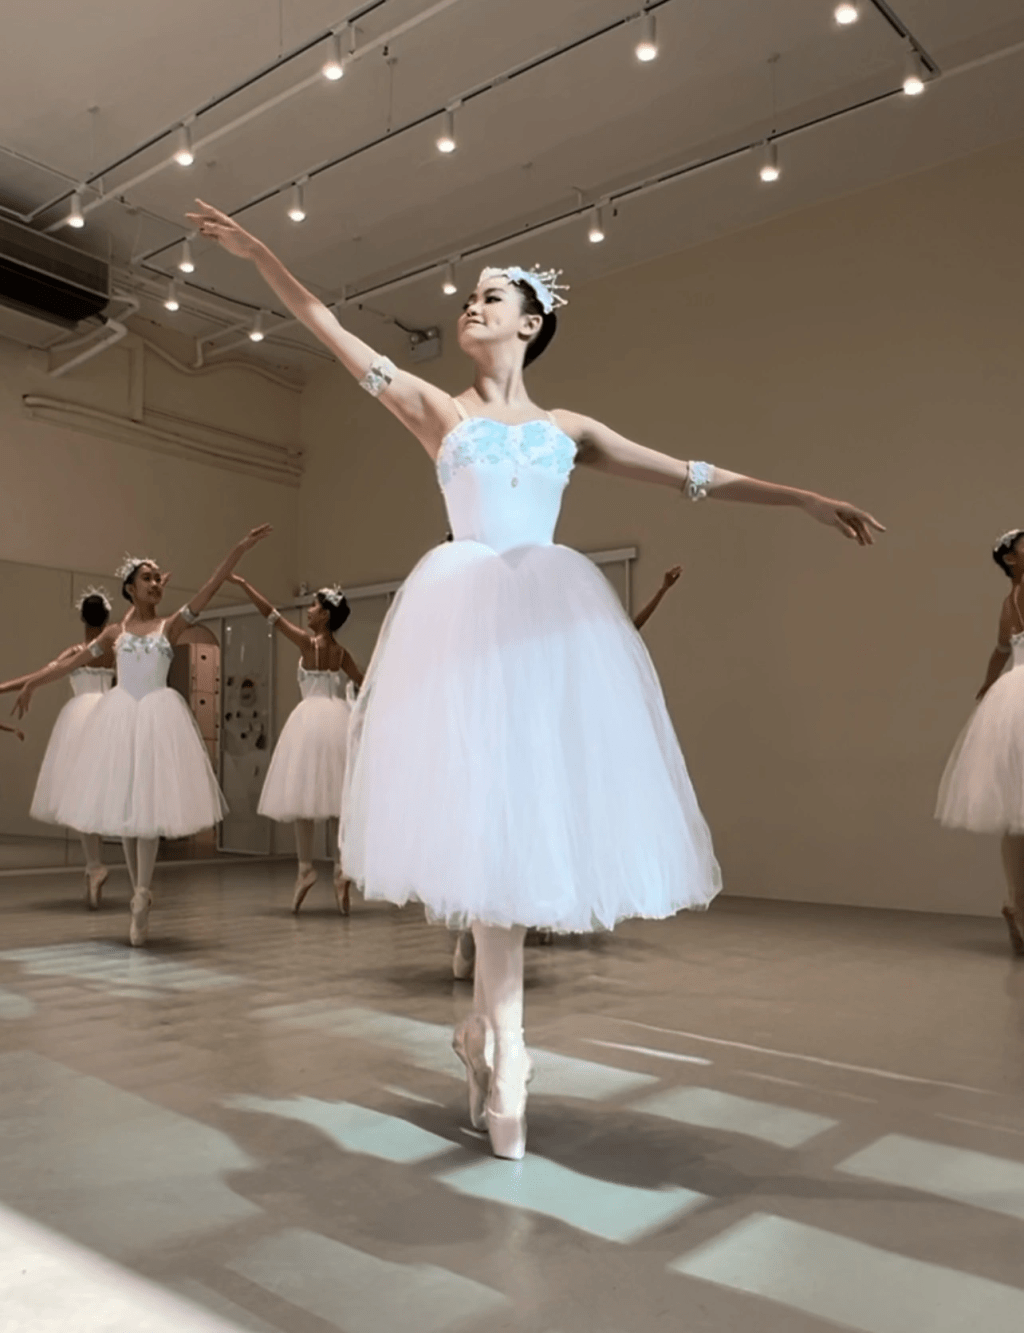 白色芭蕾舞装束好有仙气。